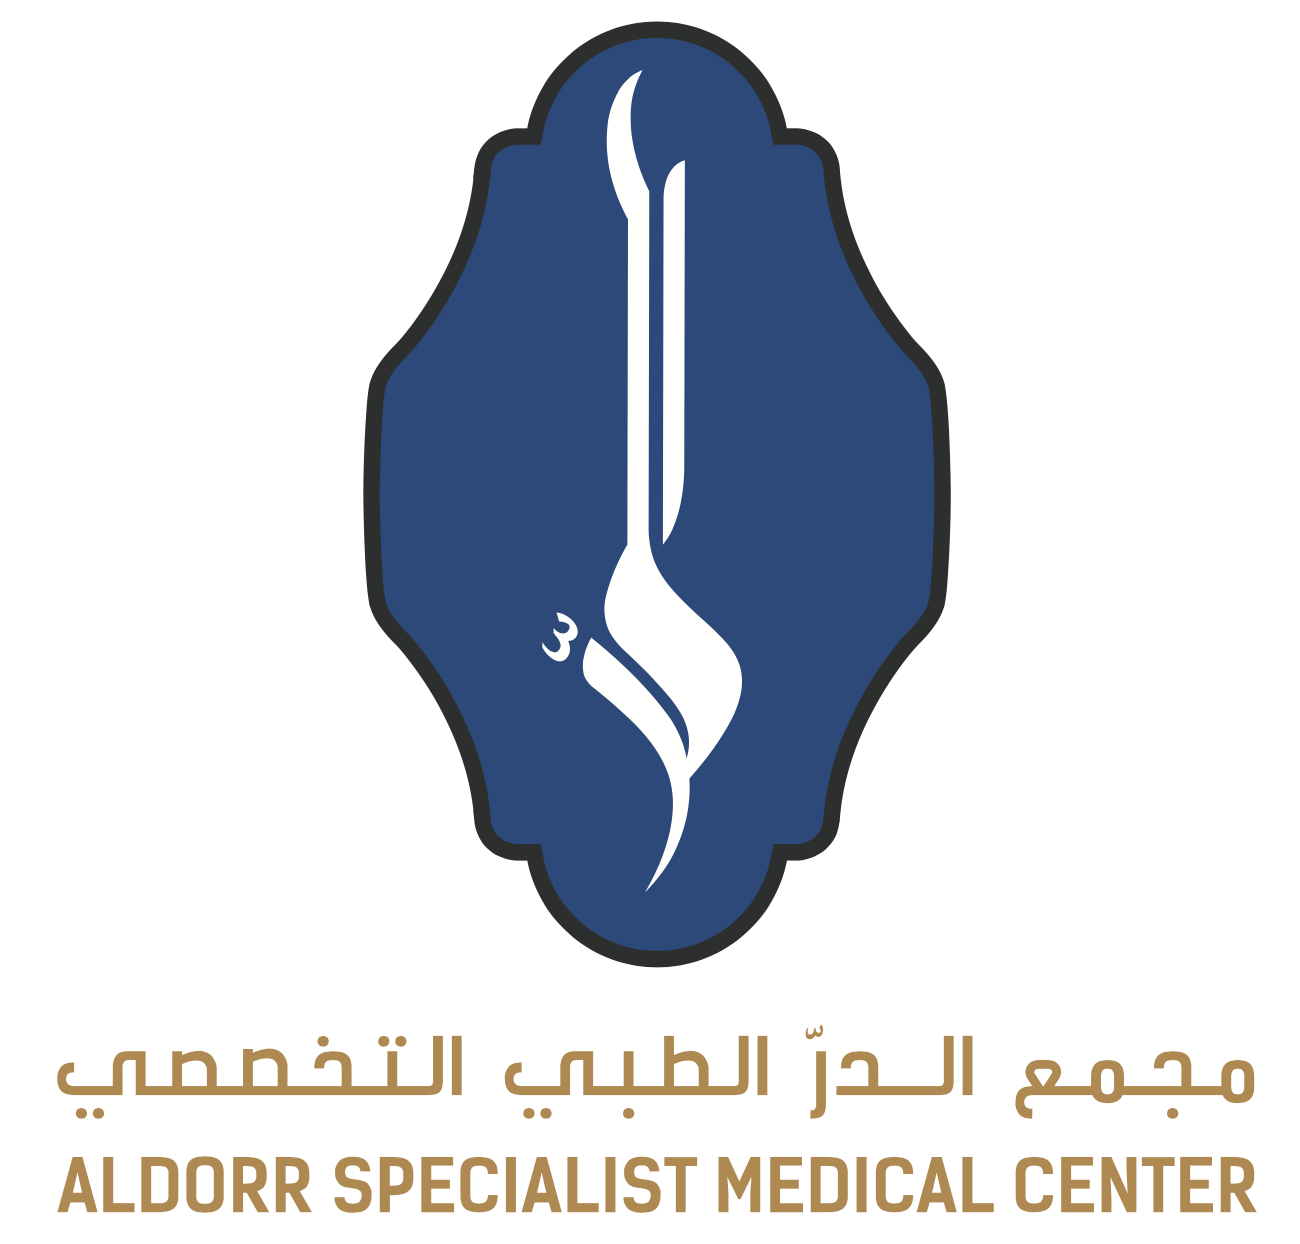 Aldorr Specialist Medical Center